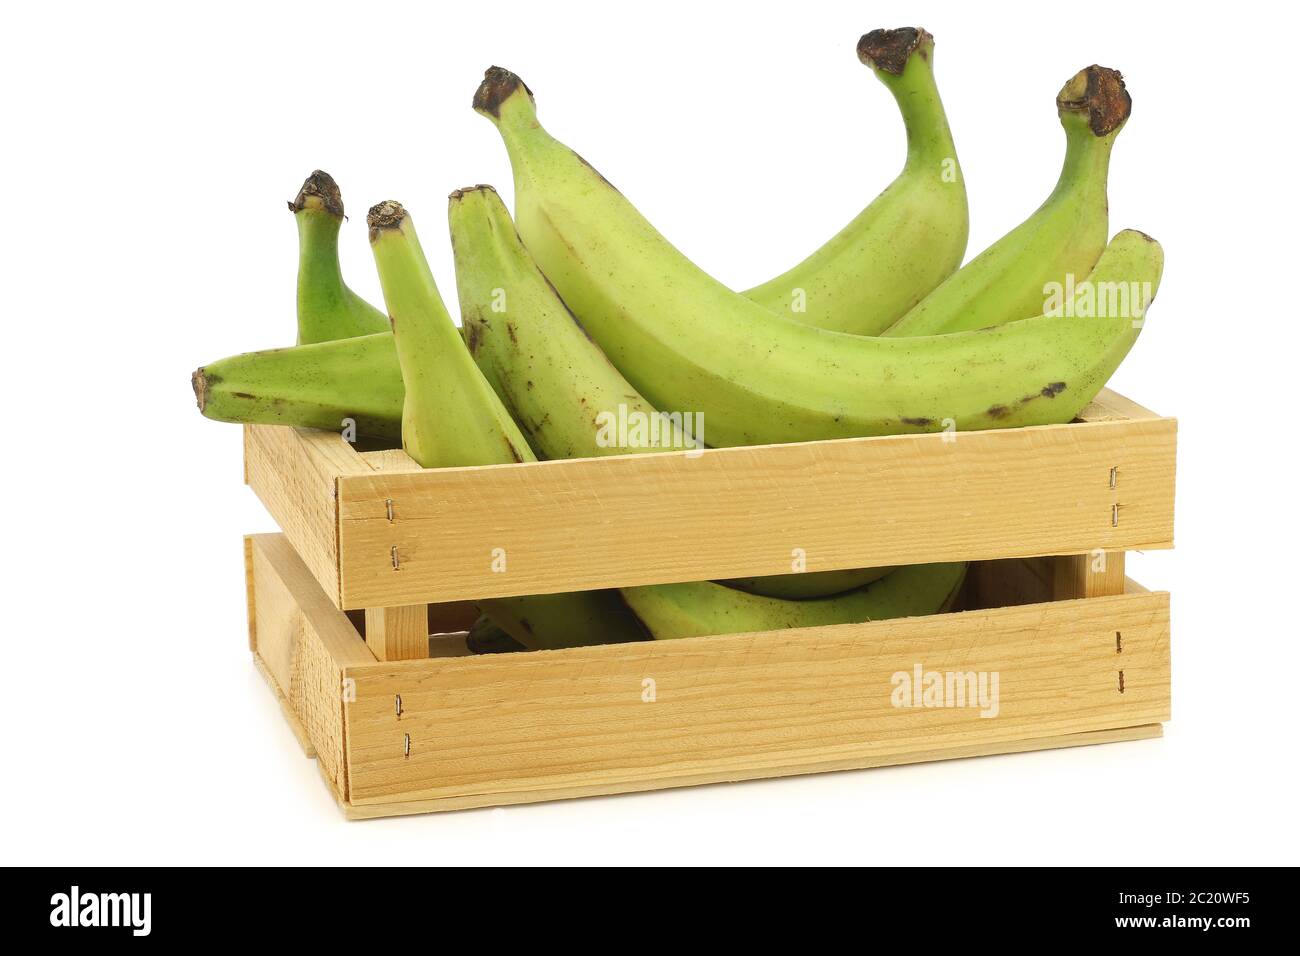 bananes non mûres (bananes plantain) dans une caisse en bois sur fond blanc Banque D'Images